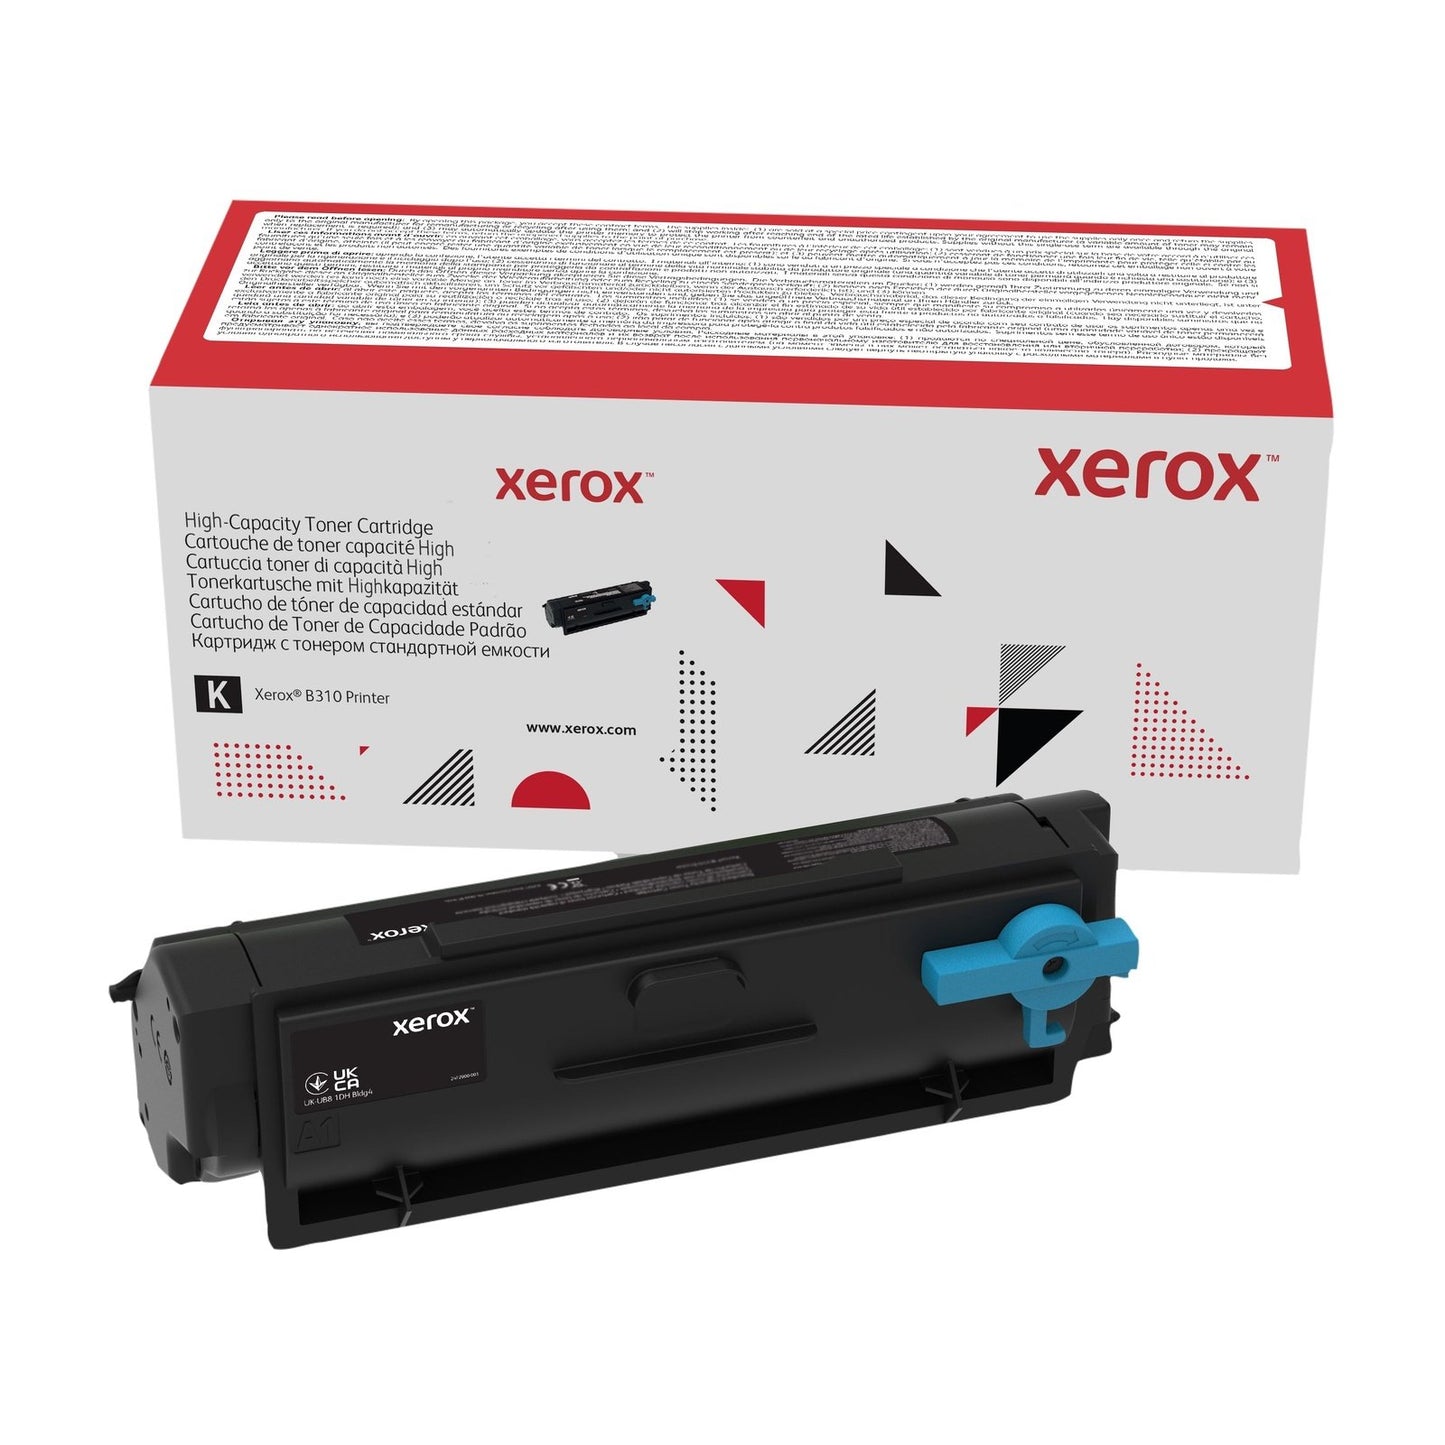 Xerox B305/B310/B315 Toner Cartridges